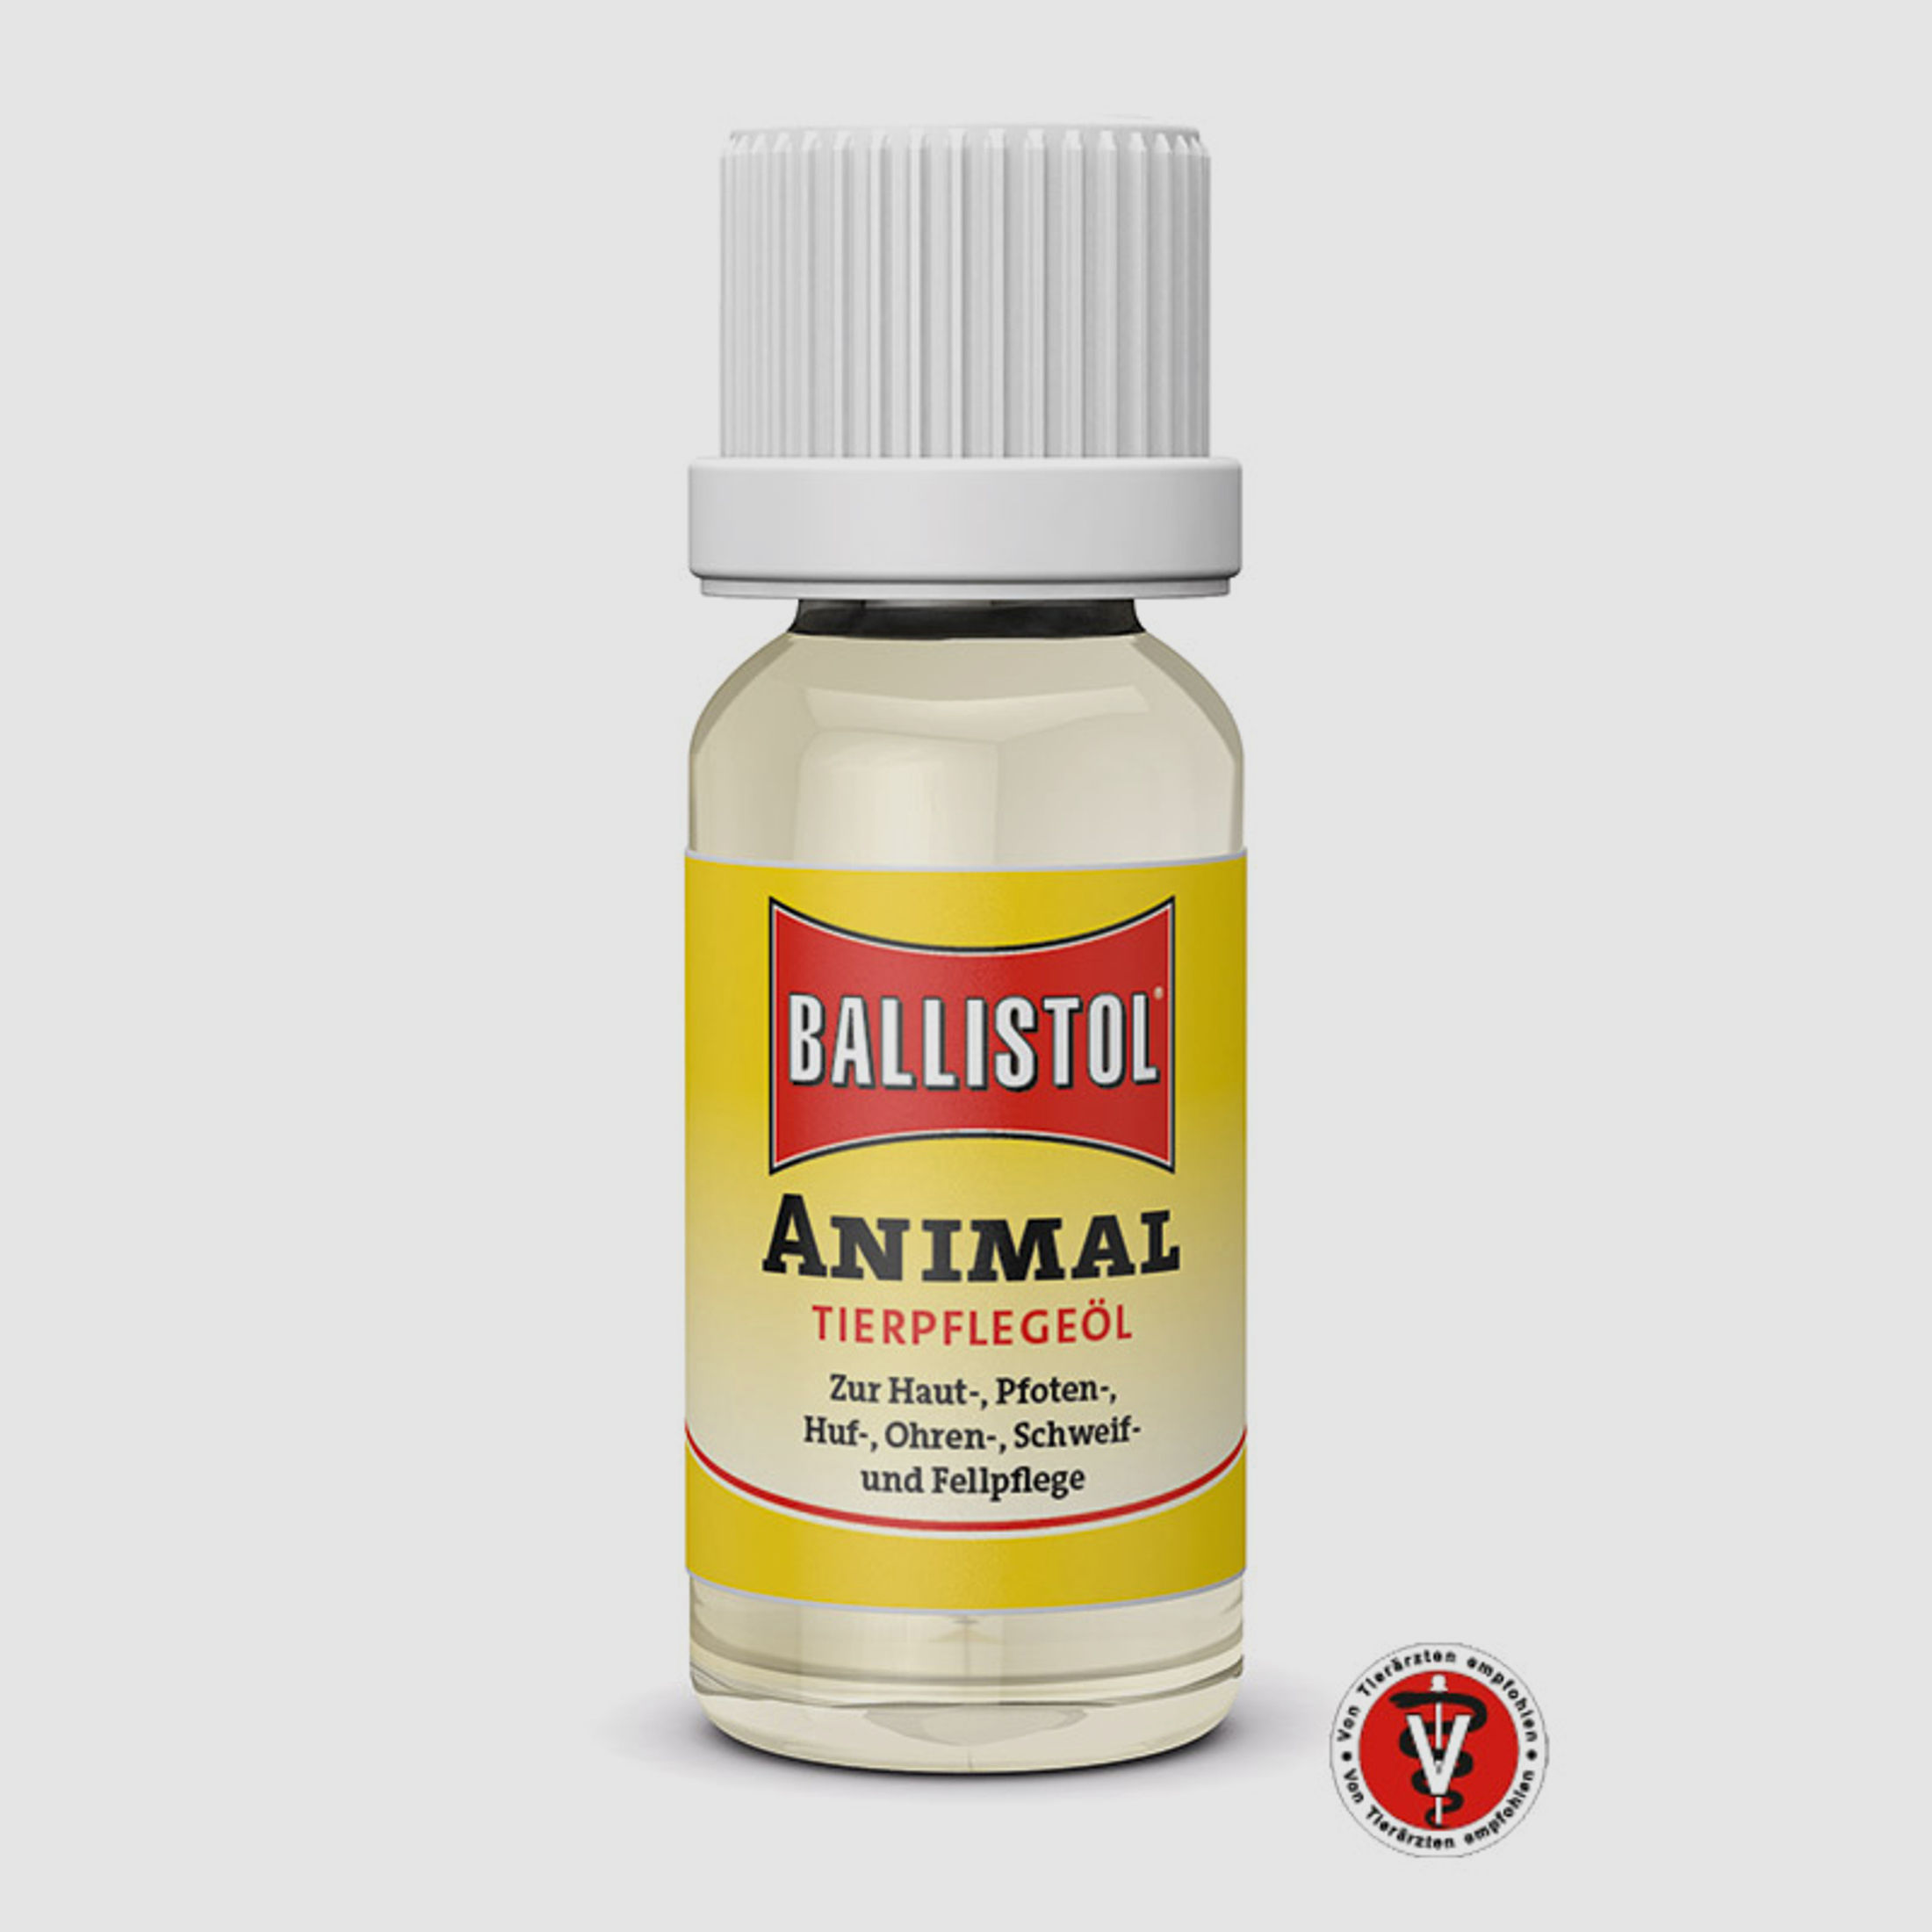 Ballistol Animal 28 Pflegetücher in der Spenderbox